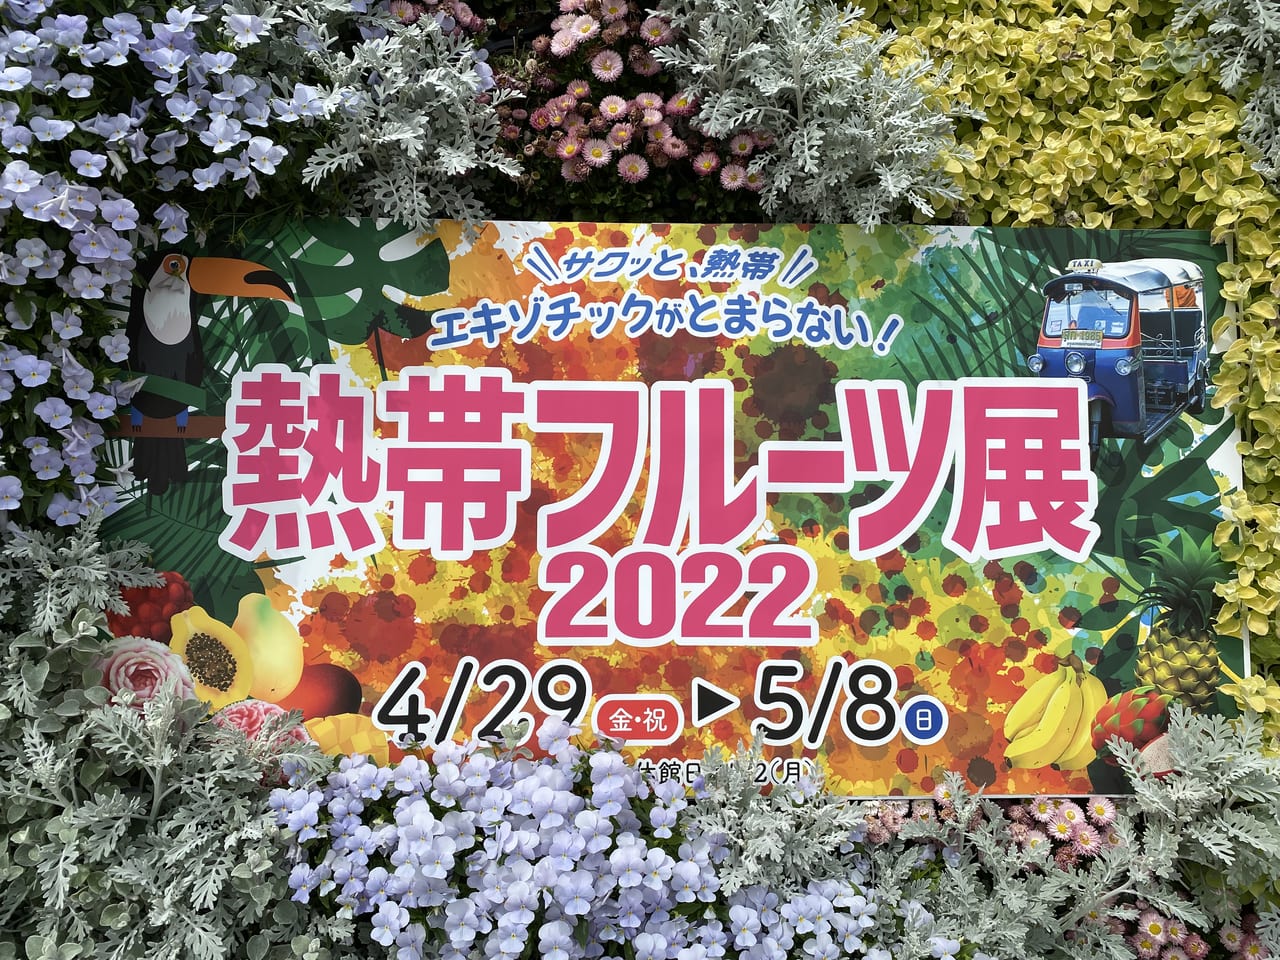 大阪市鶴見区 咲くやこの花館で 熱帯フルーツ展 が開催されます 号外net 鶴見 城東